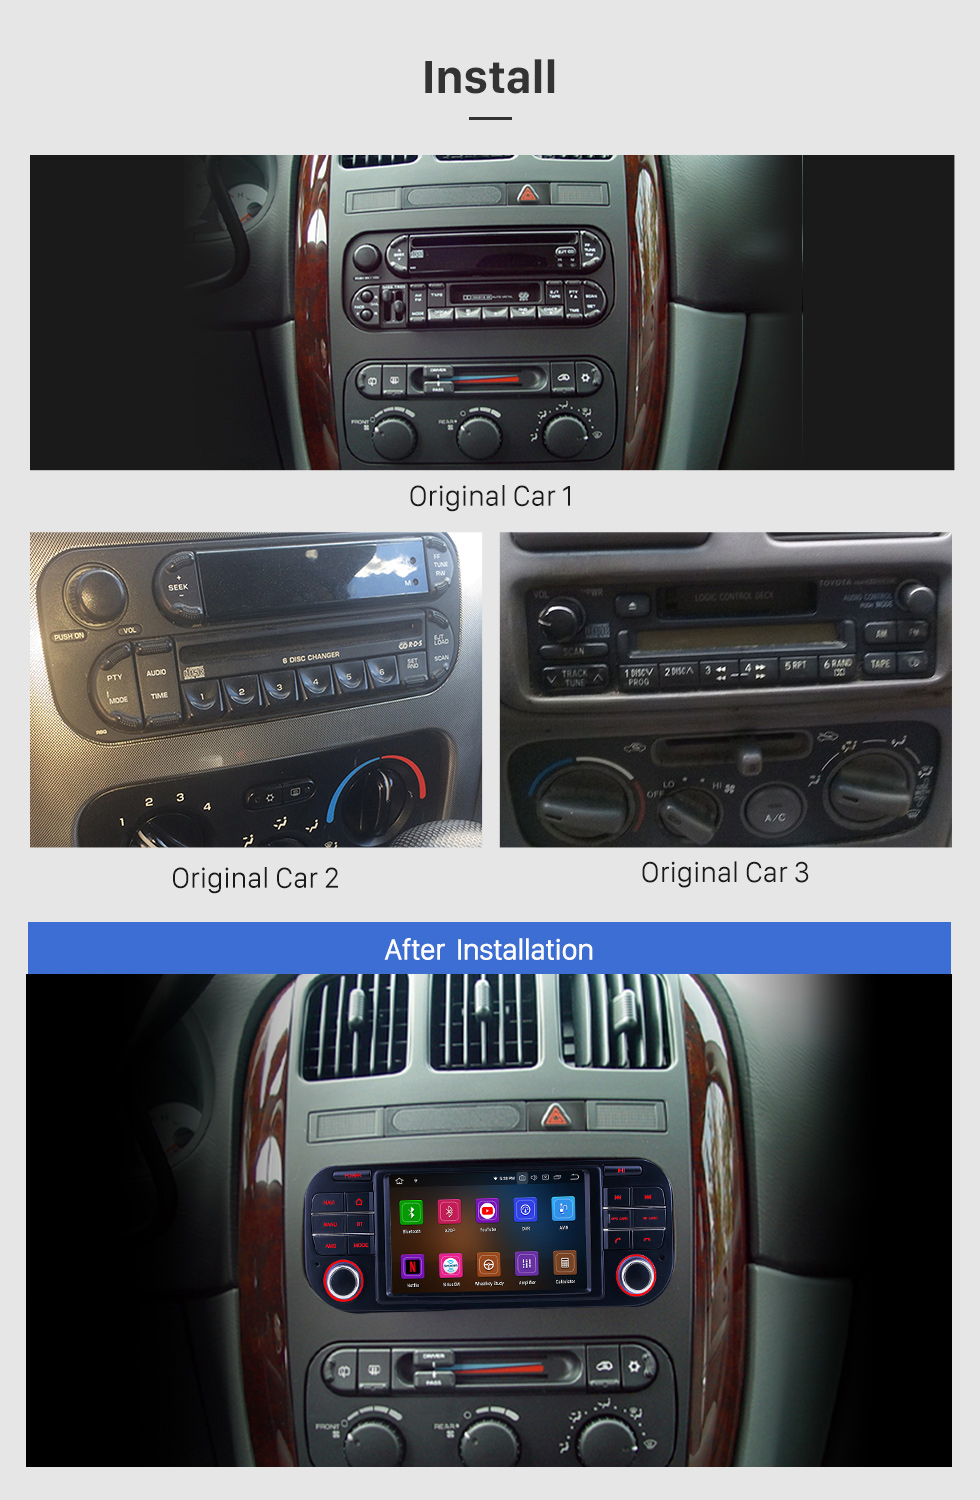 Seicane Reproductor DVD Radio sistema de navegación GPS para 2002-2010 Chrysler PT Cruiser Sebring Soporta TPMS Pantalla táctil DVR OBD Vínculo espejo 3G WiFi TV cámara de reserva Bluetooth Vídeo 